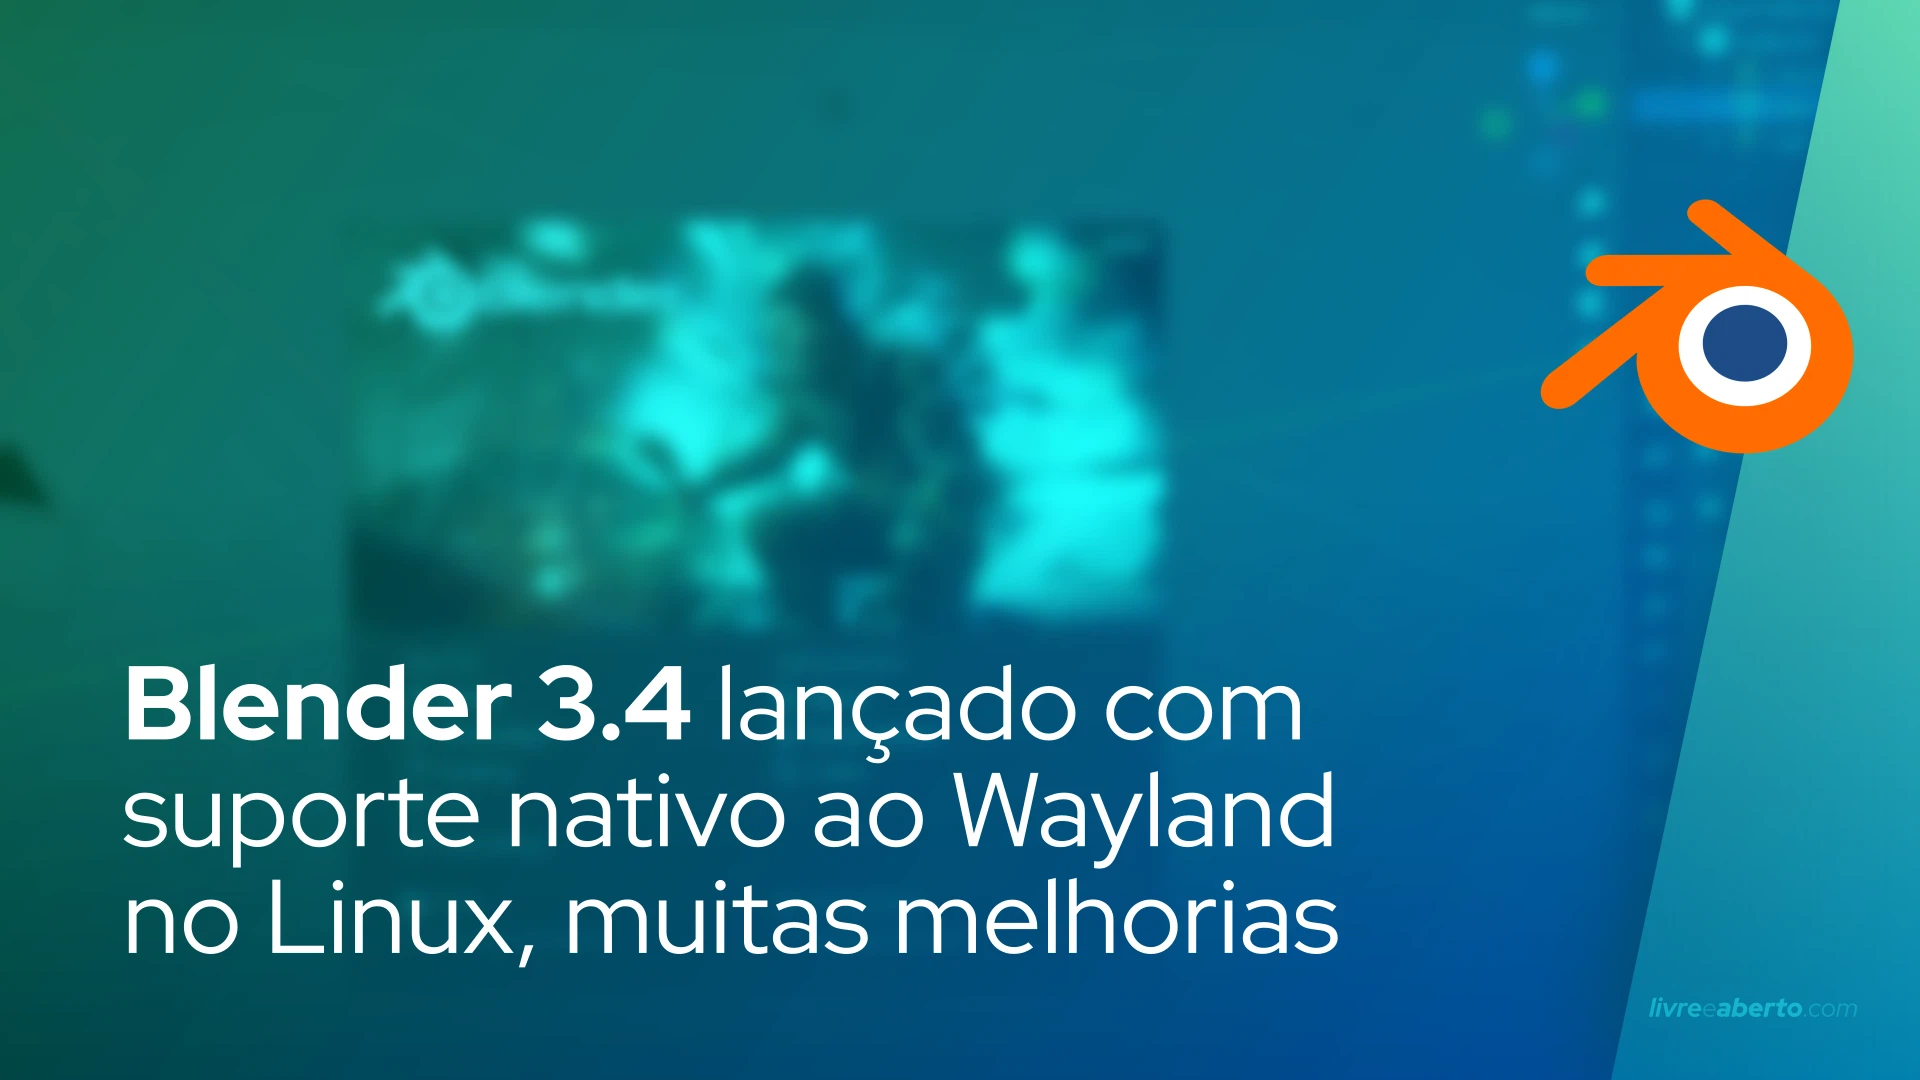 Blender 3.4 lançado com suporte nativo ao Wayland no Linux, muitas melhorias